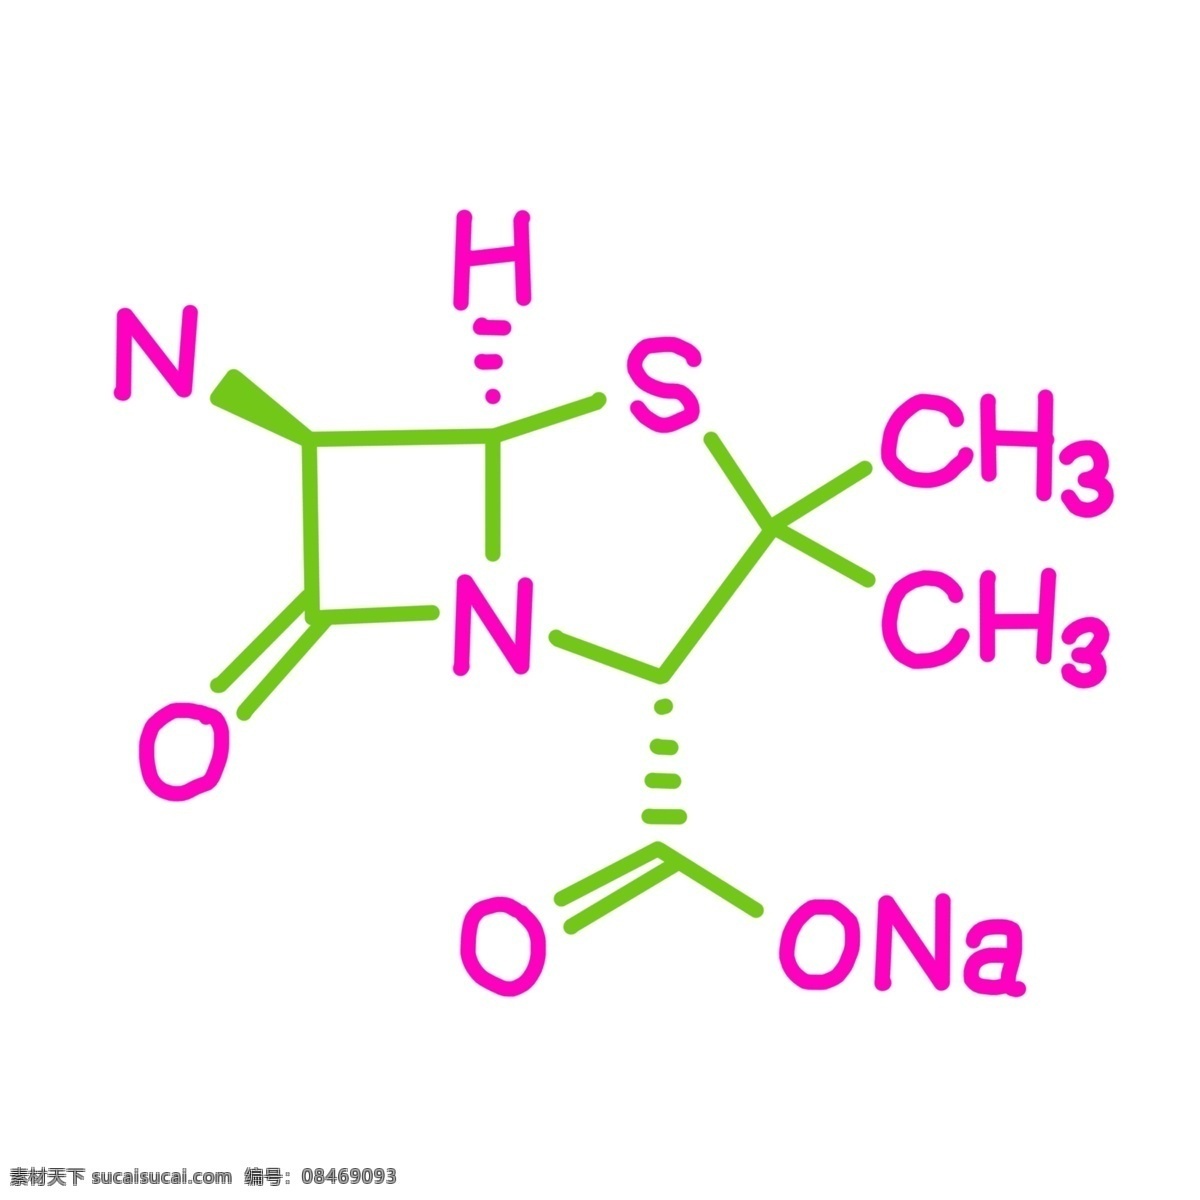 绿色 图案 化学 插图 紫色化学式 图案化学式 精美的图案 化学方程式 夸克 教学 分子 平面图